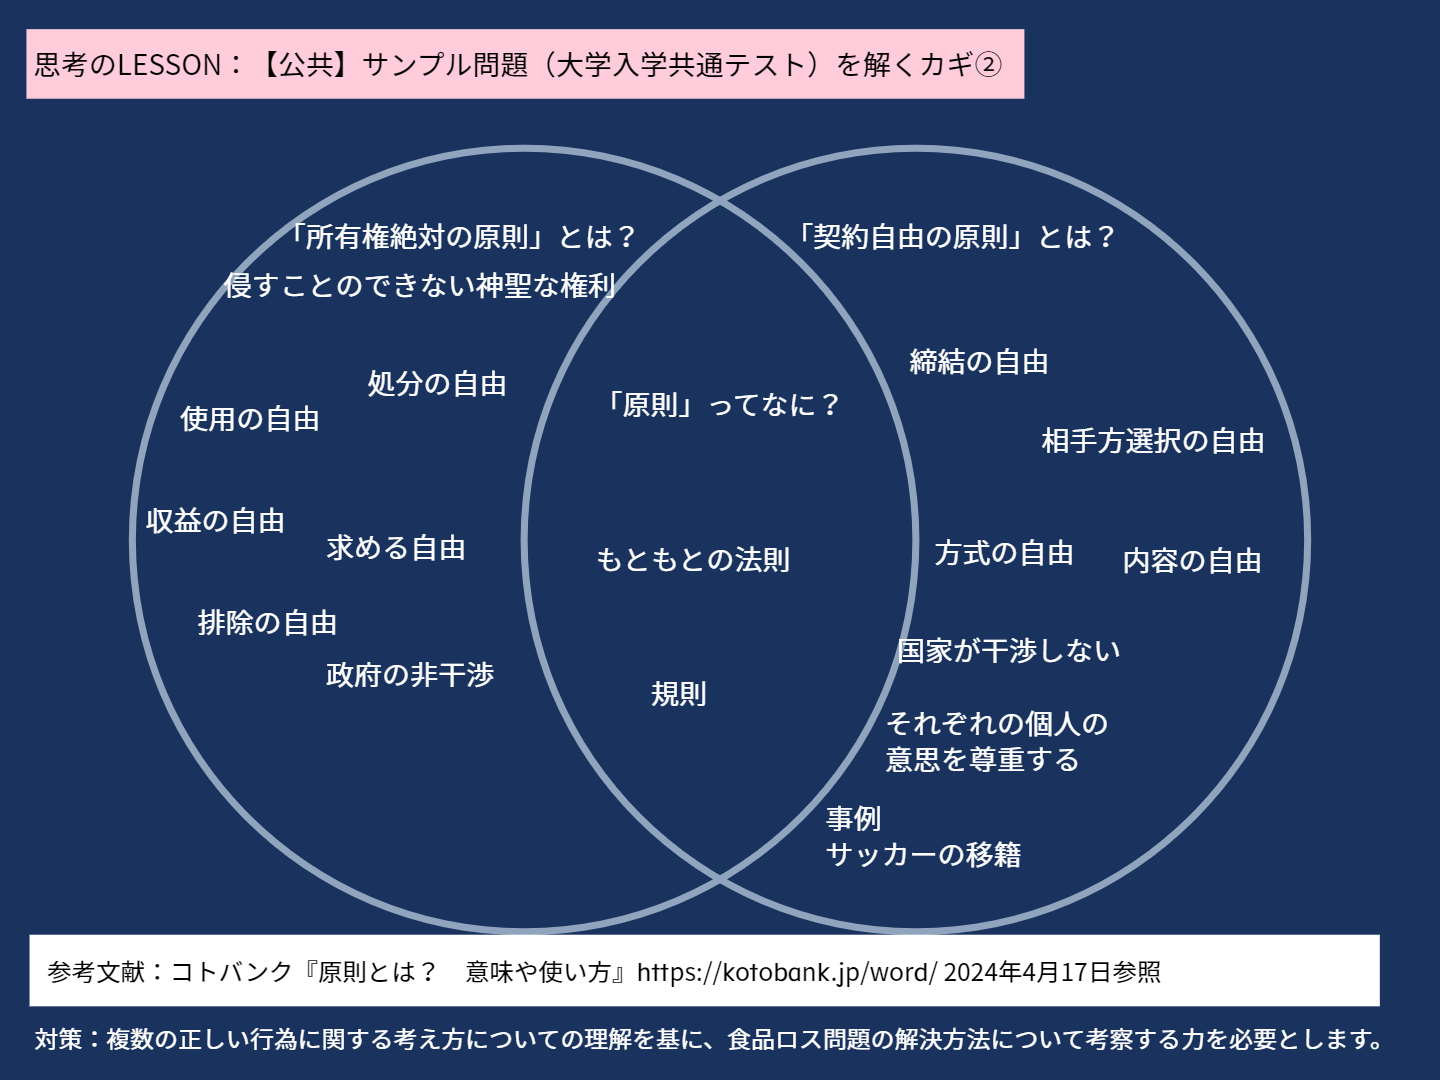 高等部3年 【公共演習】Classwork_KUSAKA hirofumi_G3フードドライブ